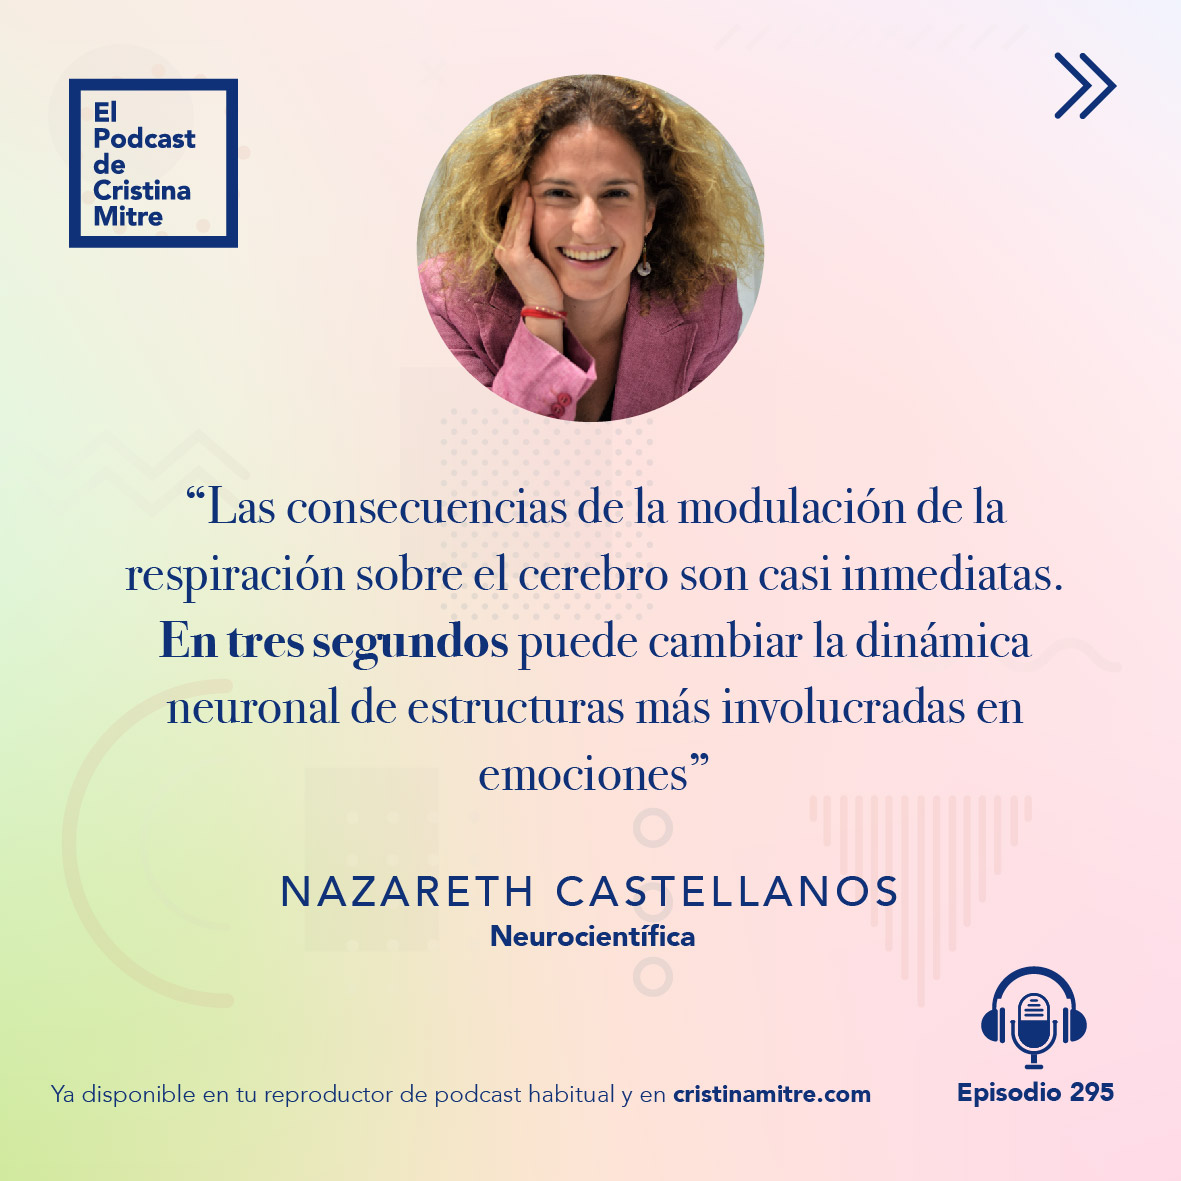 el podcast de cristina mitre Nazareth castellanos aprender a respirar 